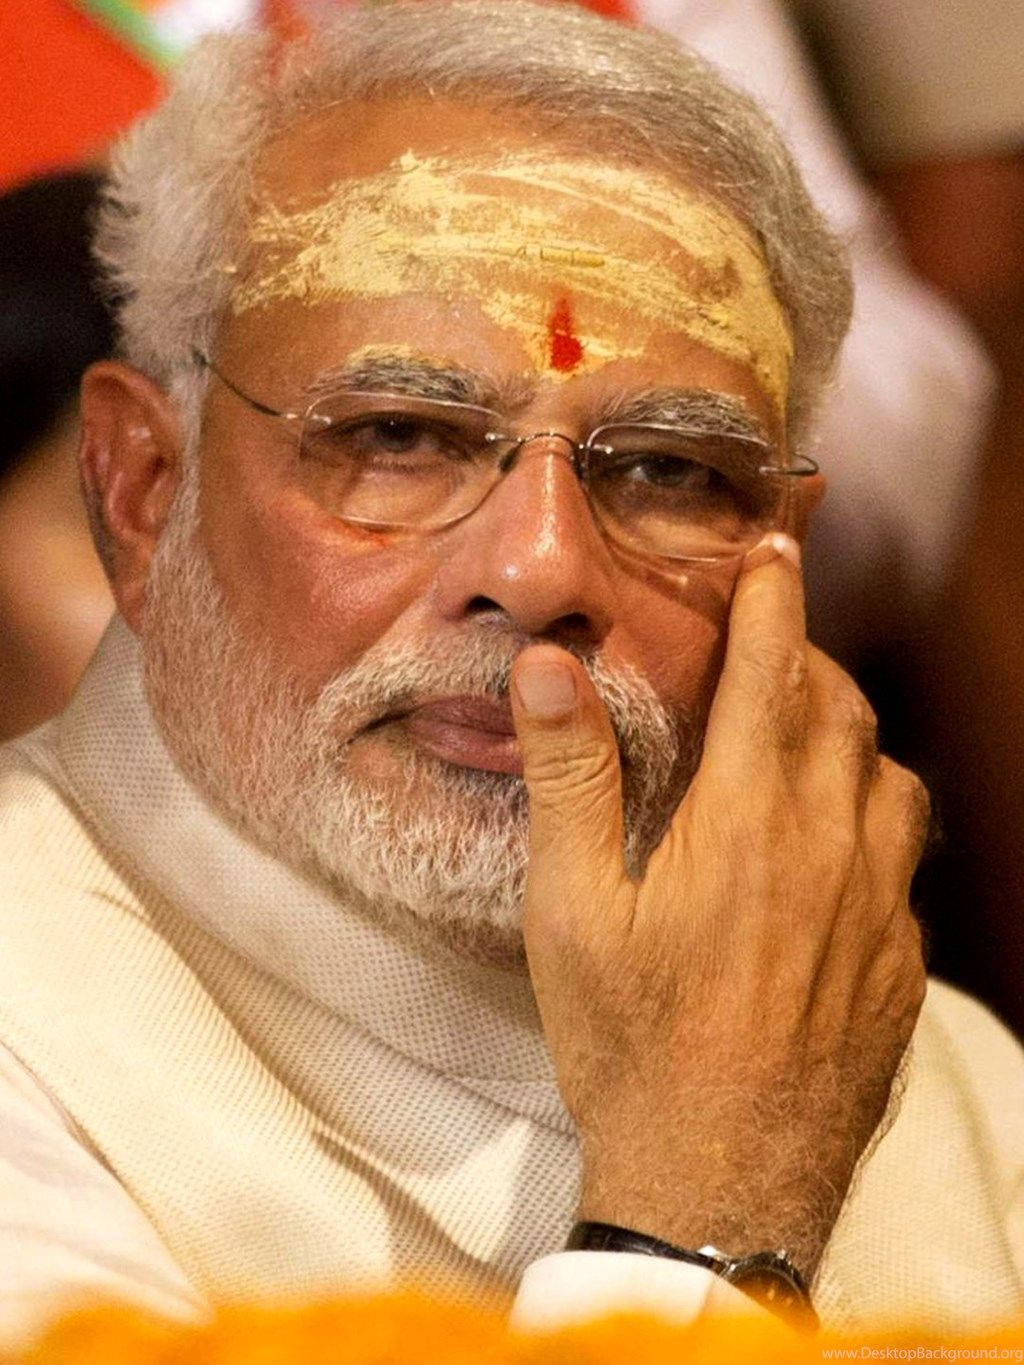 Prime Minister Narendra Modi in Traditional Attire Wallpaper